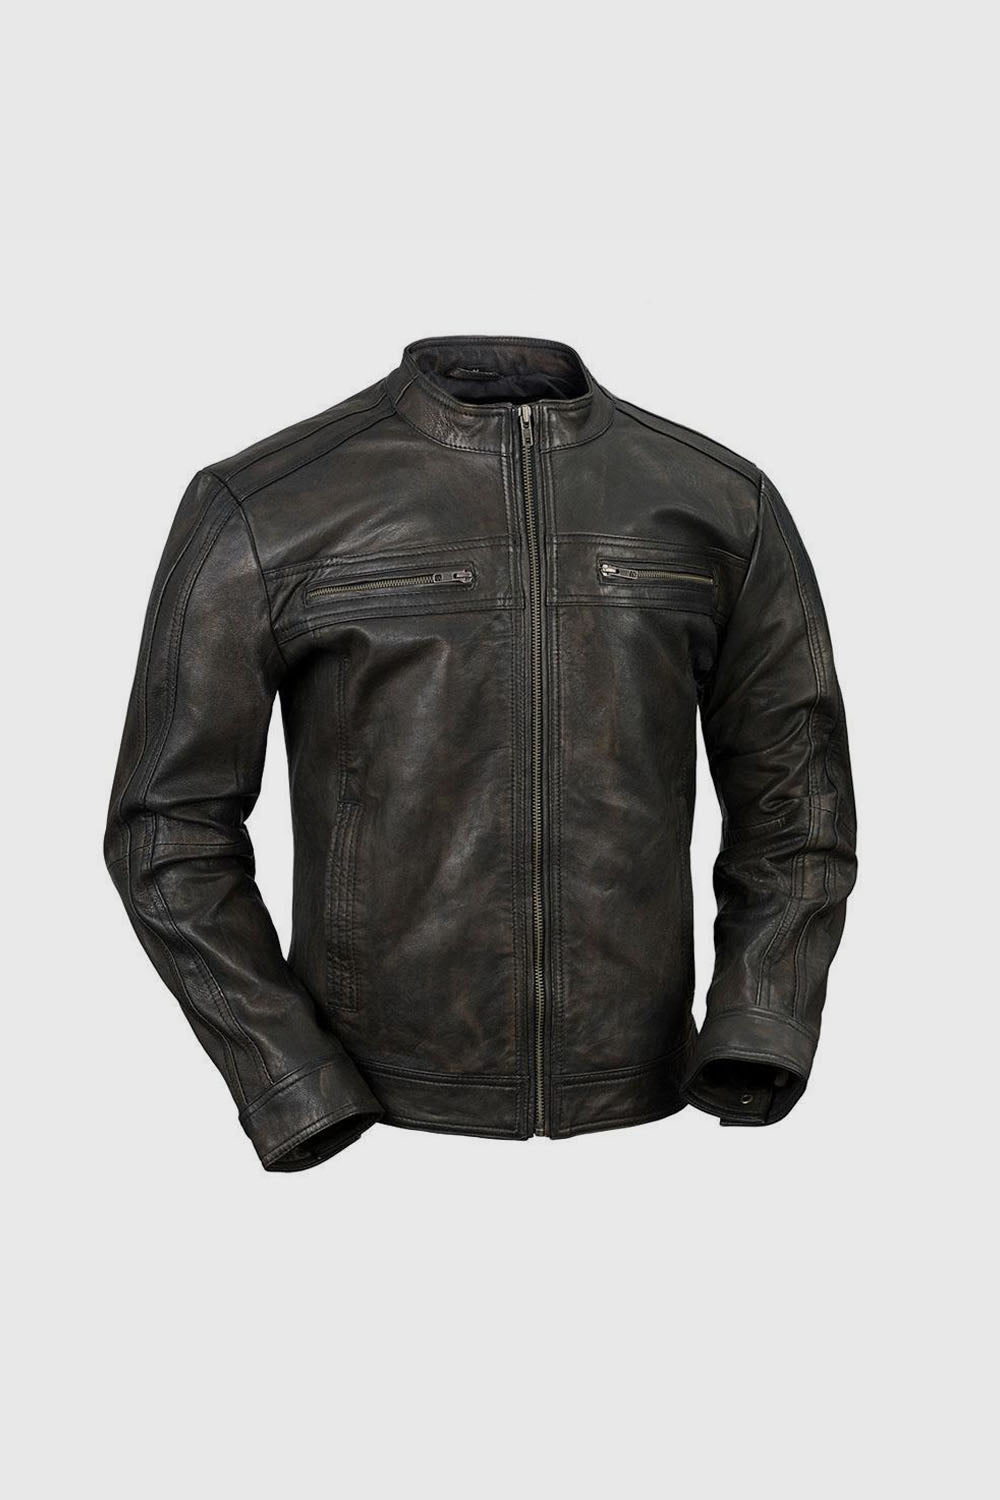 Cruiser Mens Leather Jacket Men's Leather Jacket Whet Blu NYC XS  